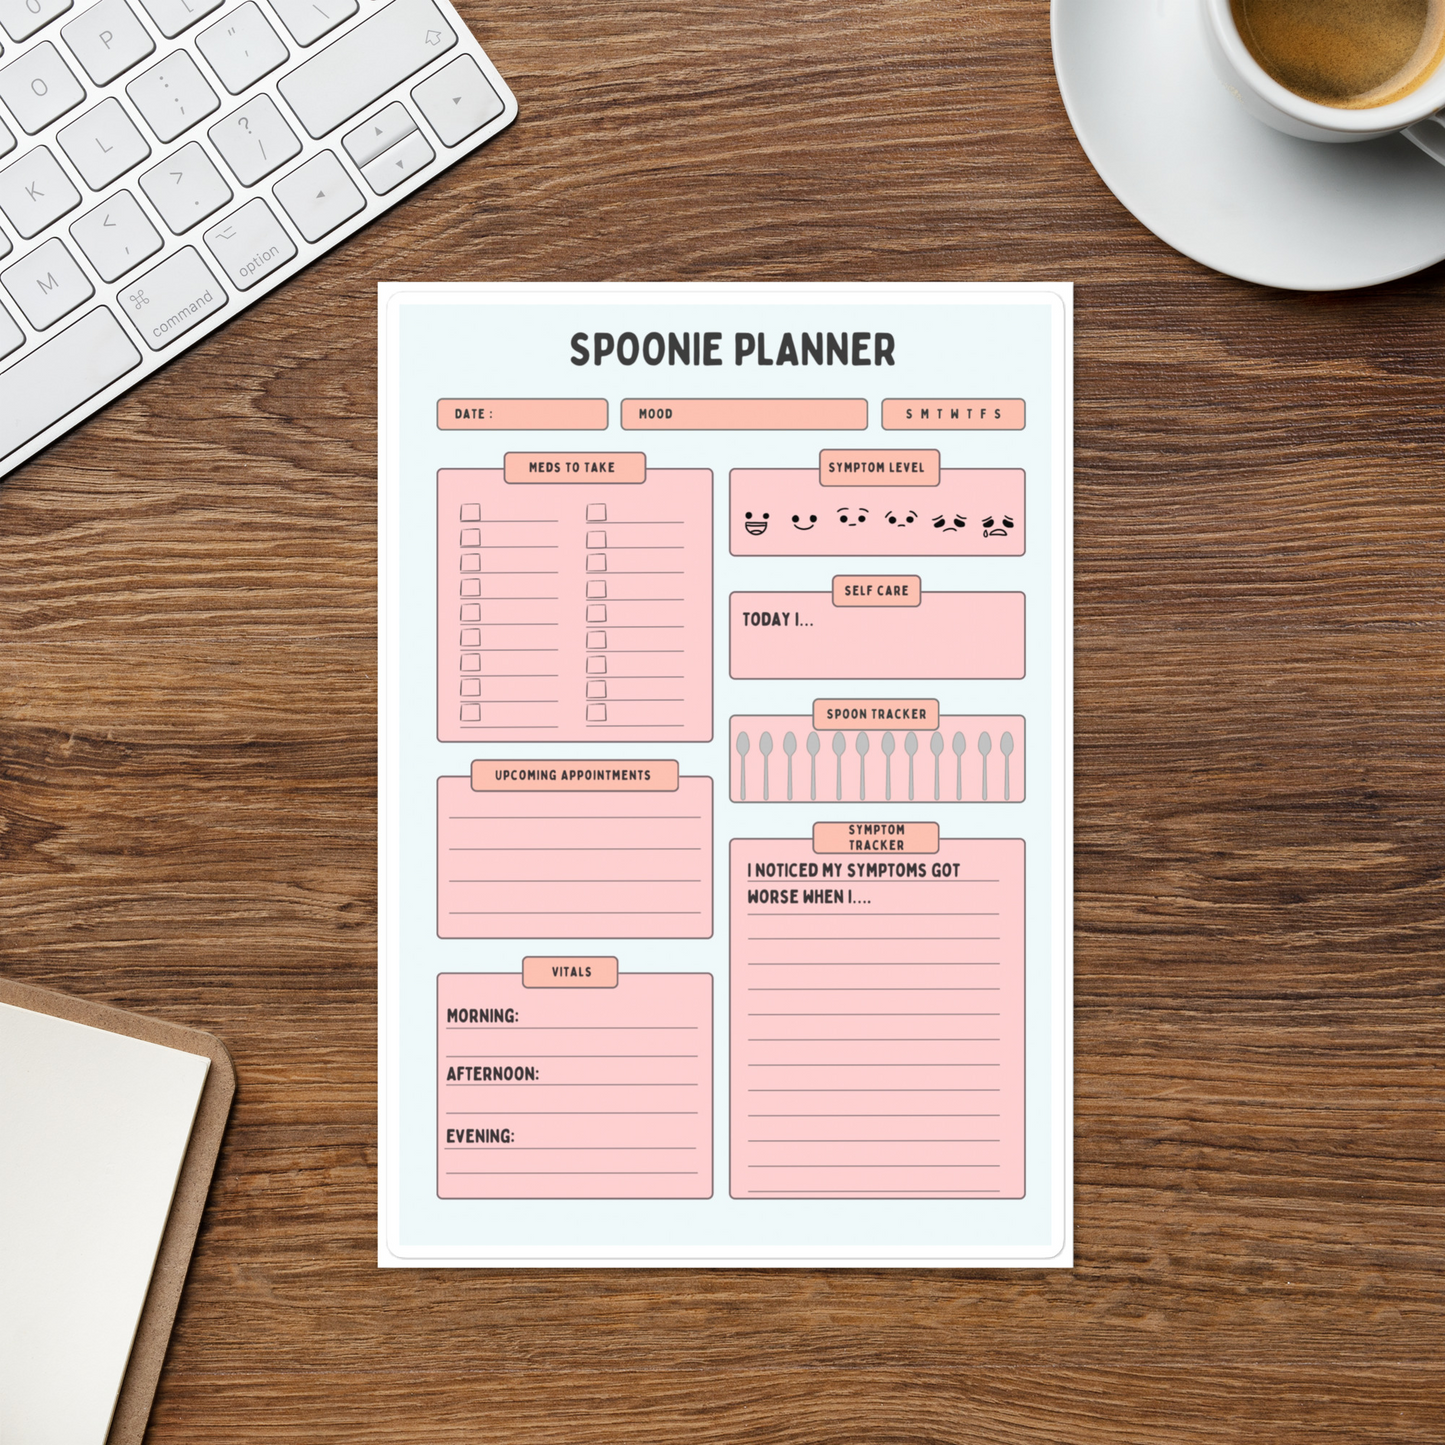 Spoonie Planner Digital Download